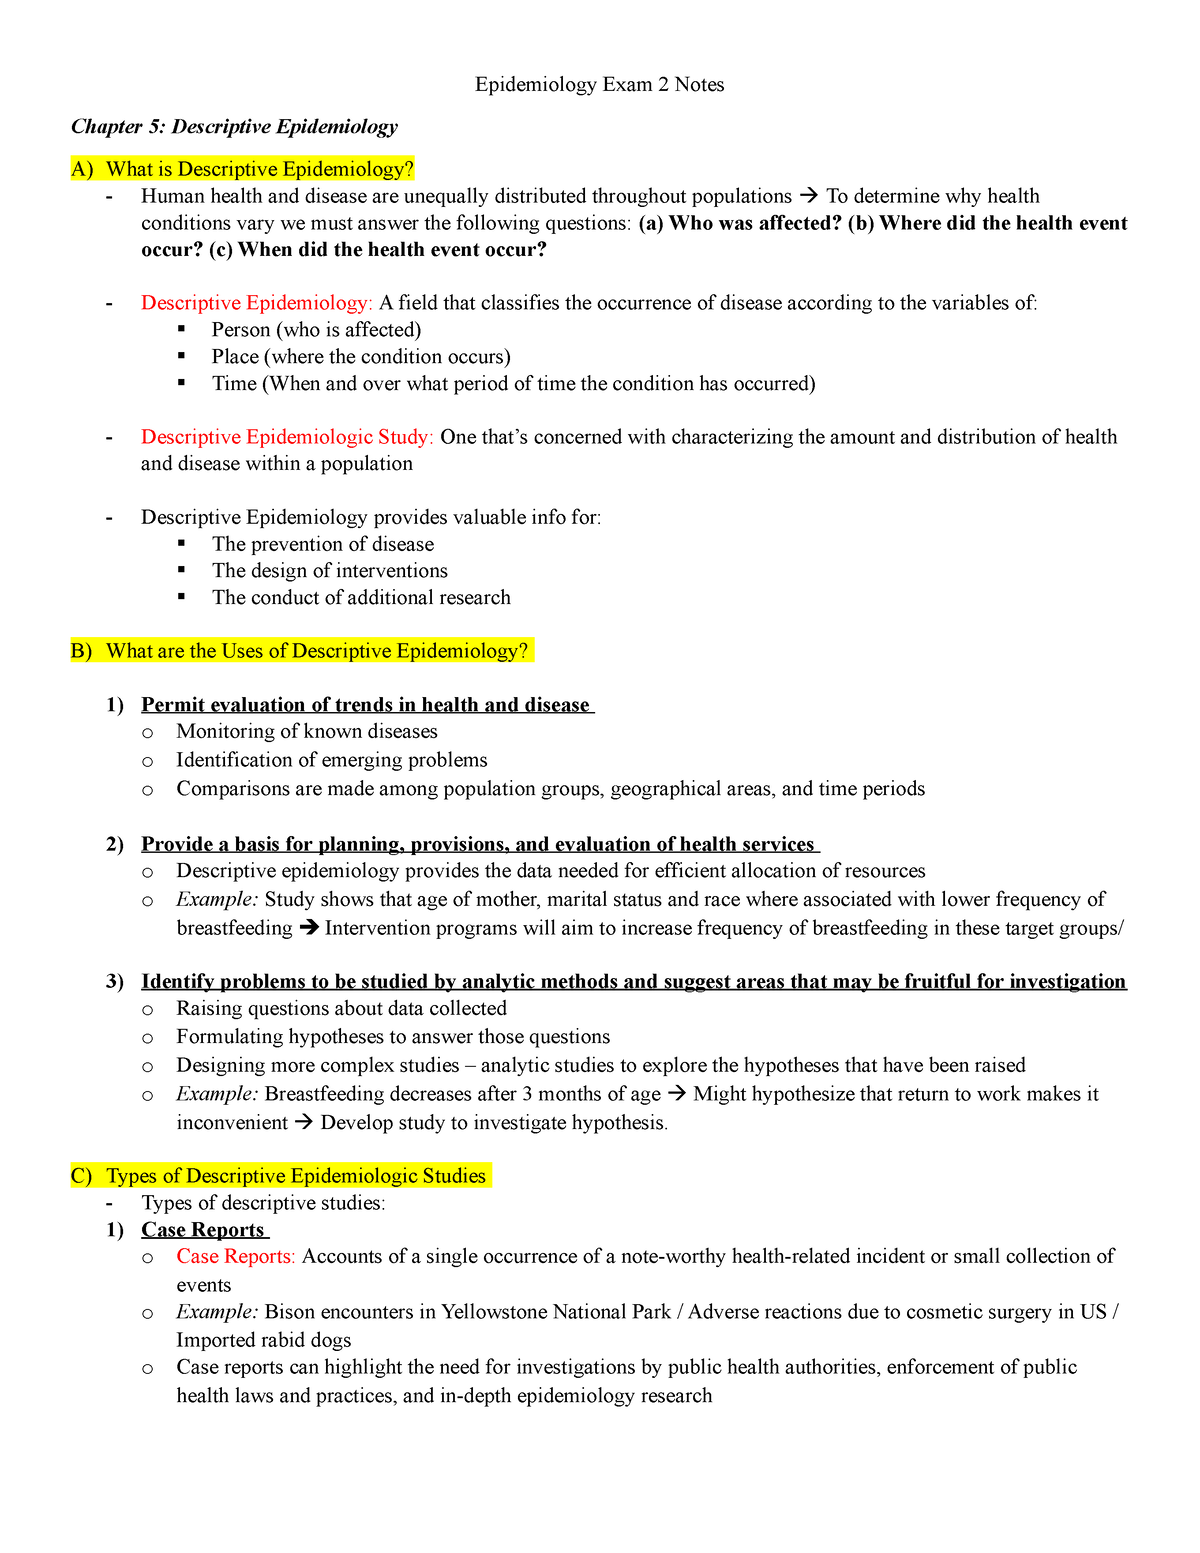 Epidemiology Notes - Exam 2 - Epidemiology Exam 2 Notes Chapter 5 ...